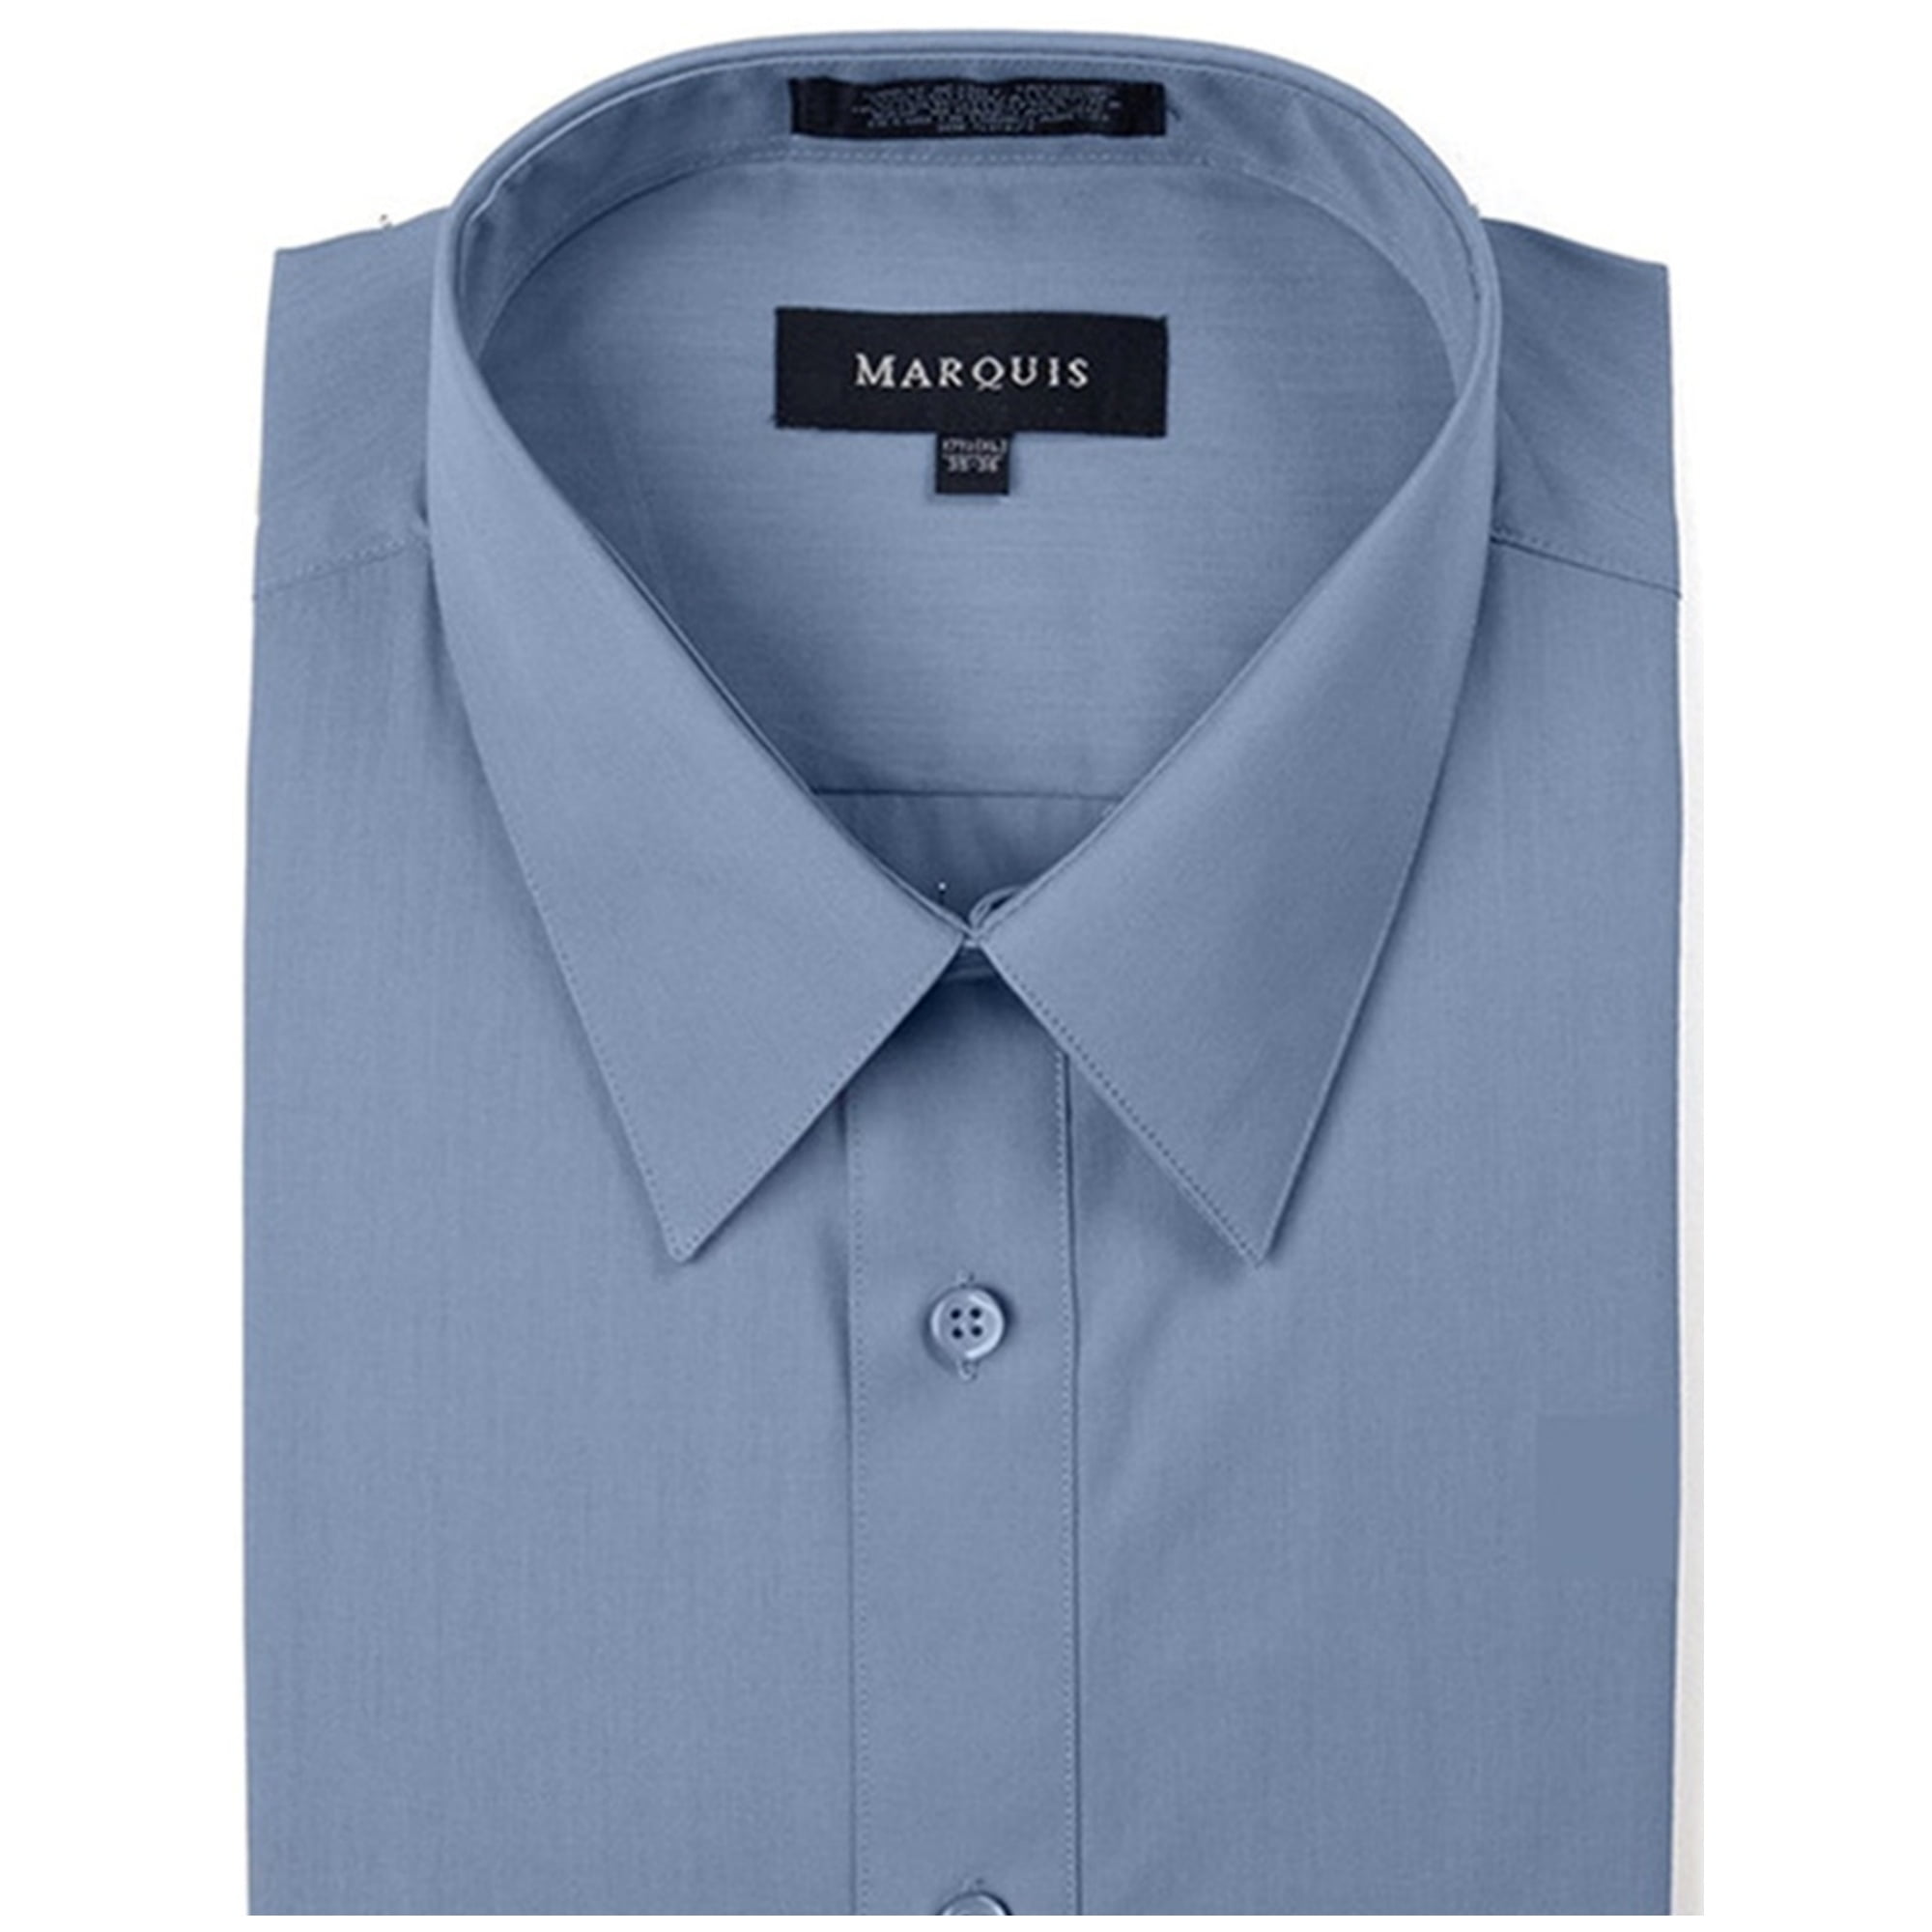 Dakloos Antagonisme walvis Marquis Men's Steel Blue Long Sleeve Slim Fit Dress Shirt N 15.5, S 34-35 -  Walmart.com